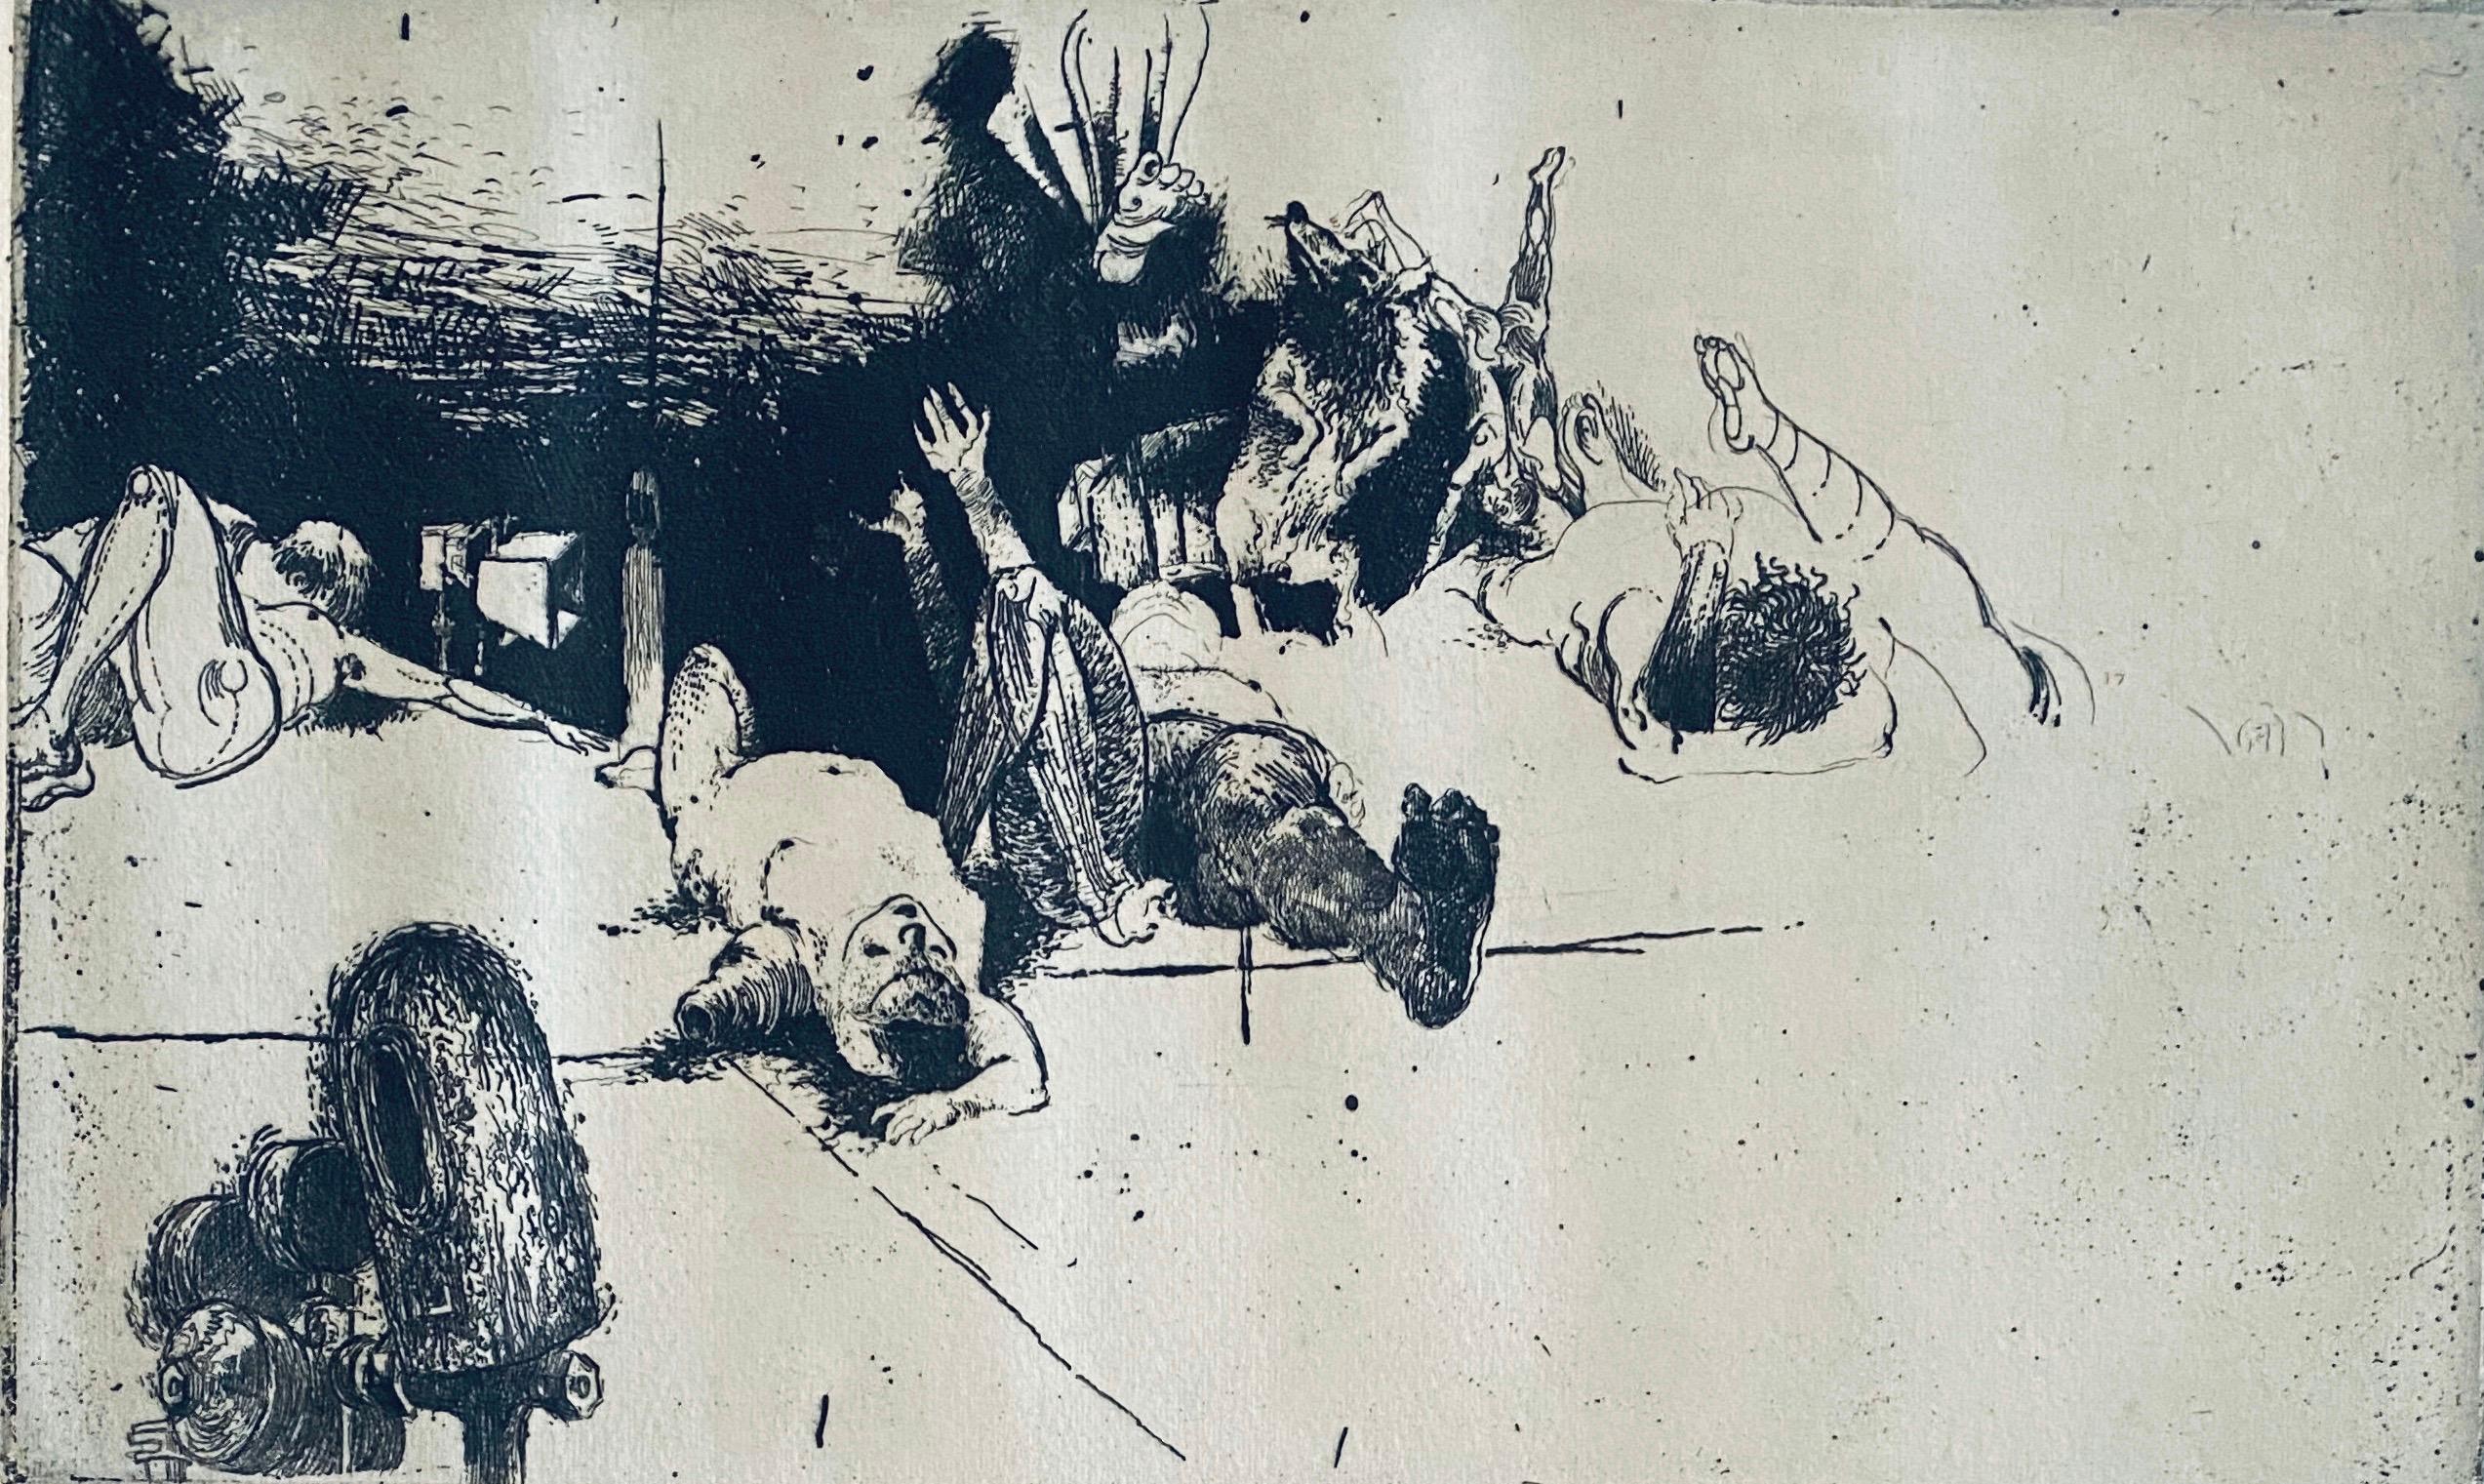 Robert A. Birmelin Interior Print - Fallen Figures. Standing Dog, American Modernist Abstract Etching